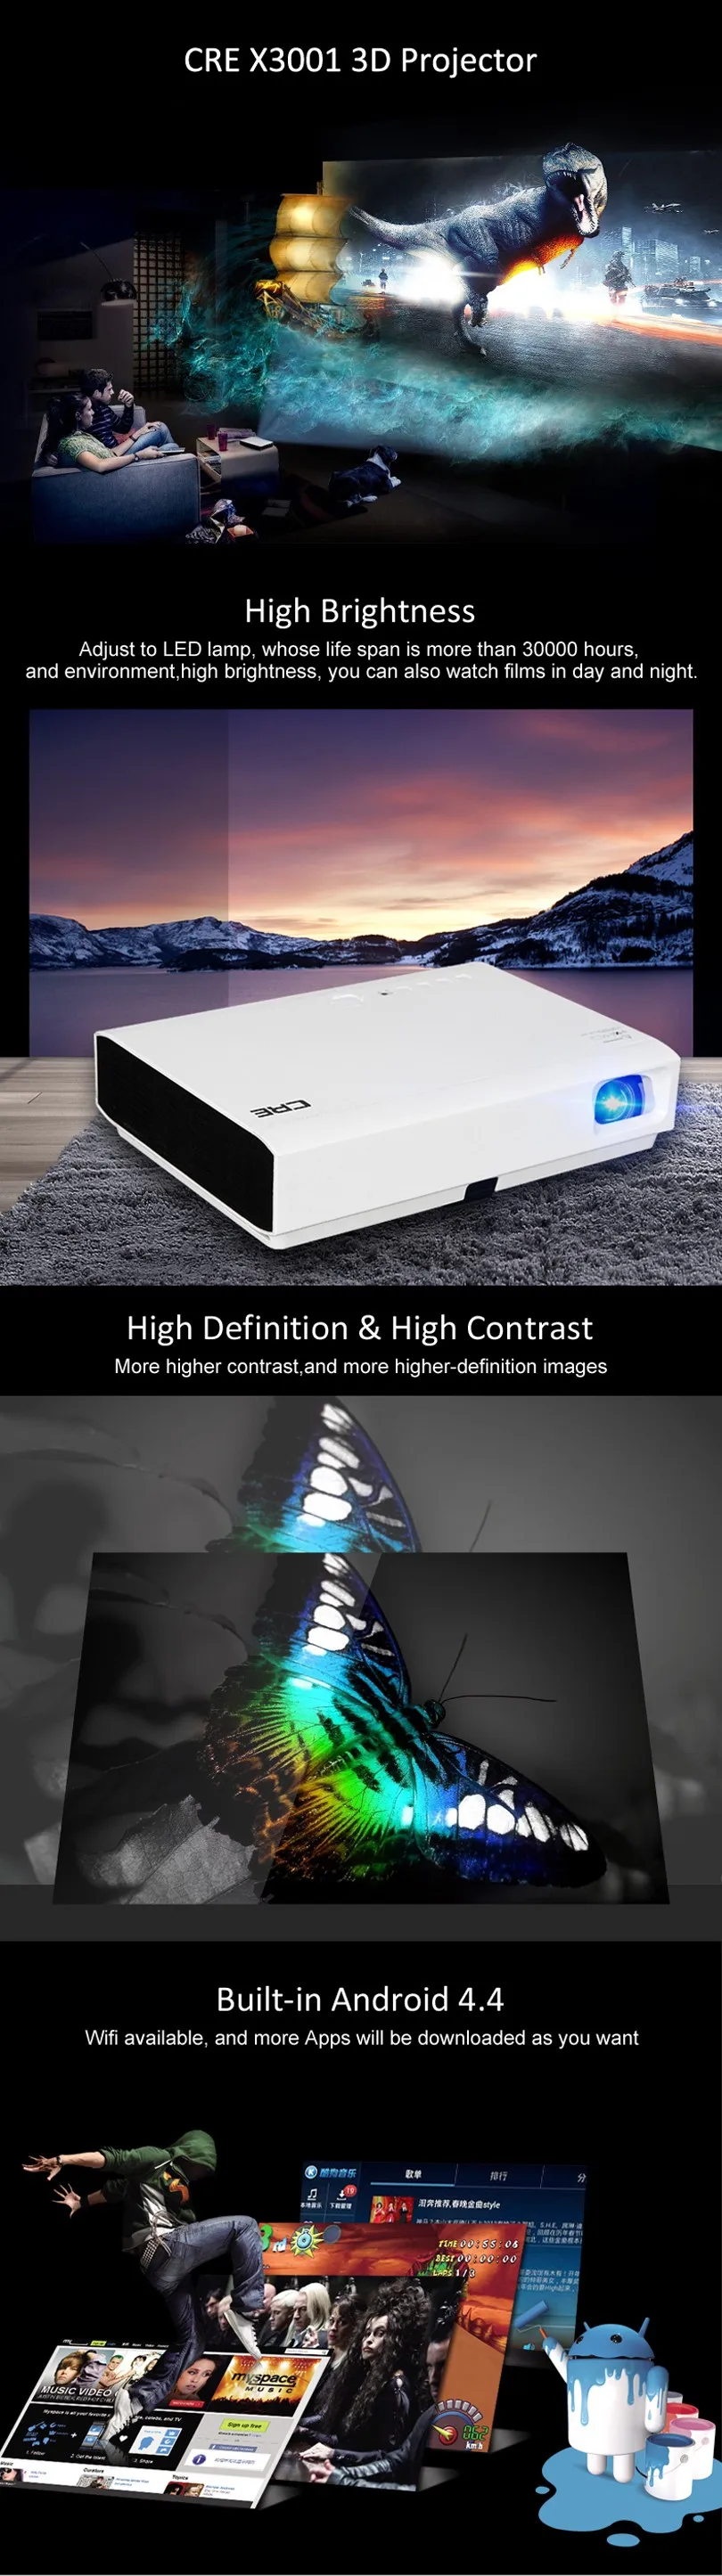 CRE X3001 DLP проектор короткофокусные проекторы 3000 люмен Домашний кинотеатр с Android wifi Bluetooth 100000:1 высокая контрастность